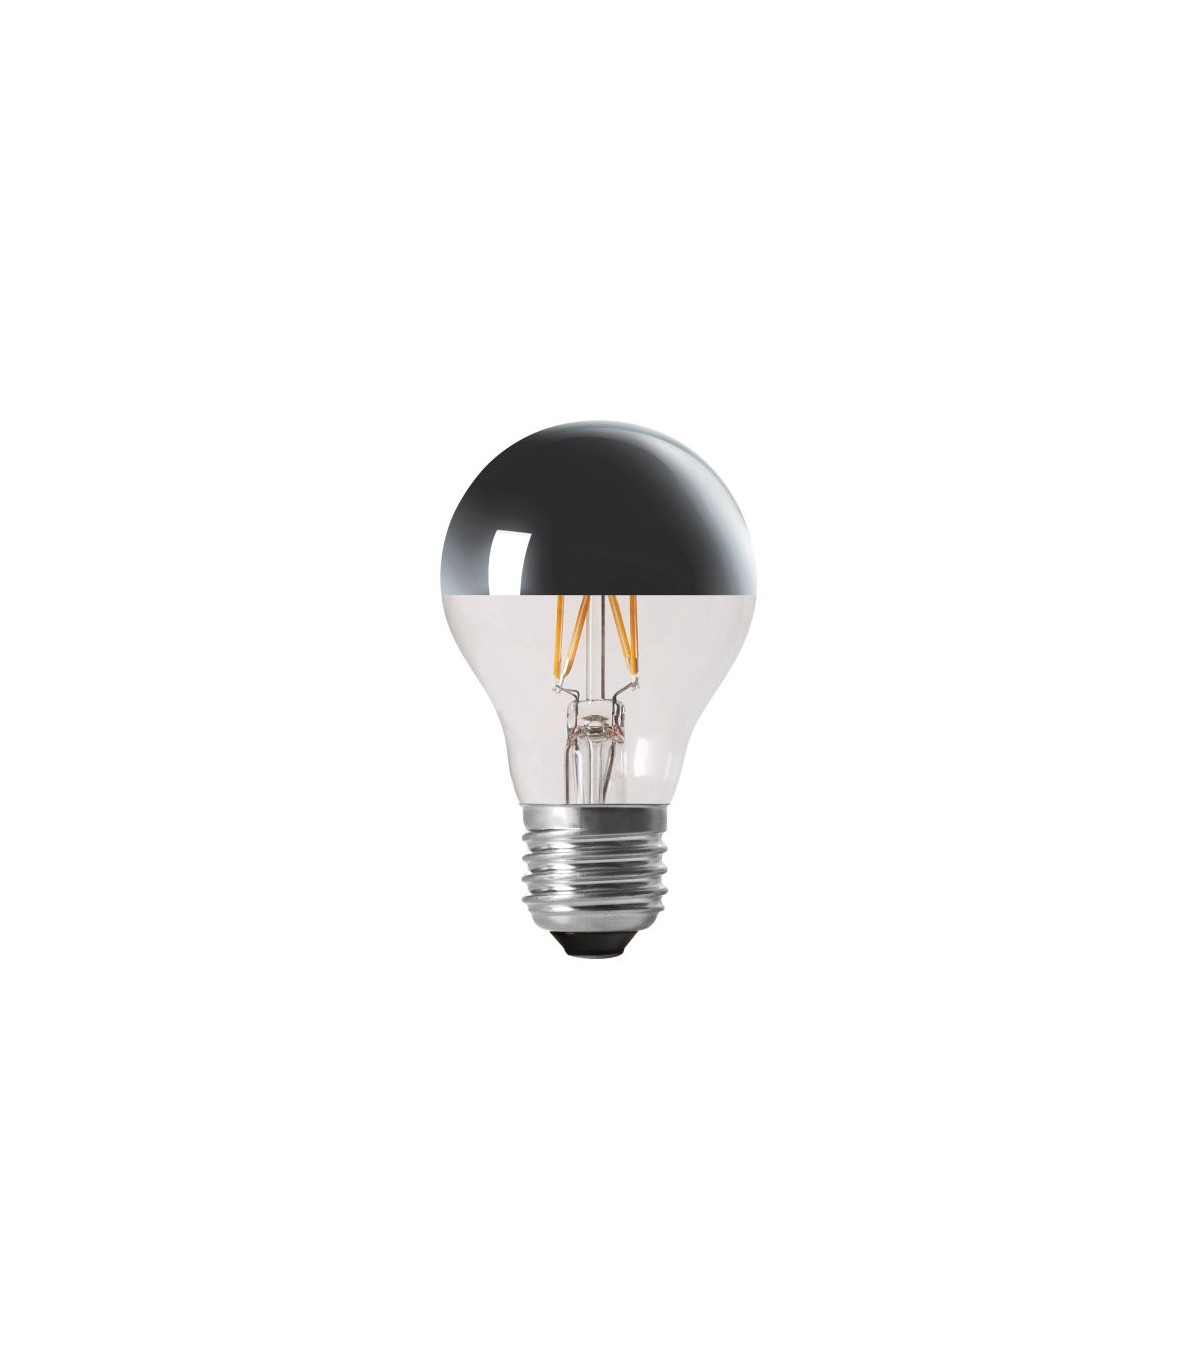 ARIC 20118  Ampoule LED A60 décorative Calotte argentée E27 4,1W variable  - Blanc Chaud